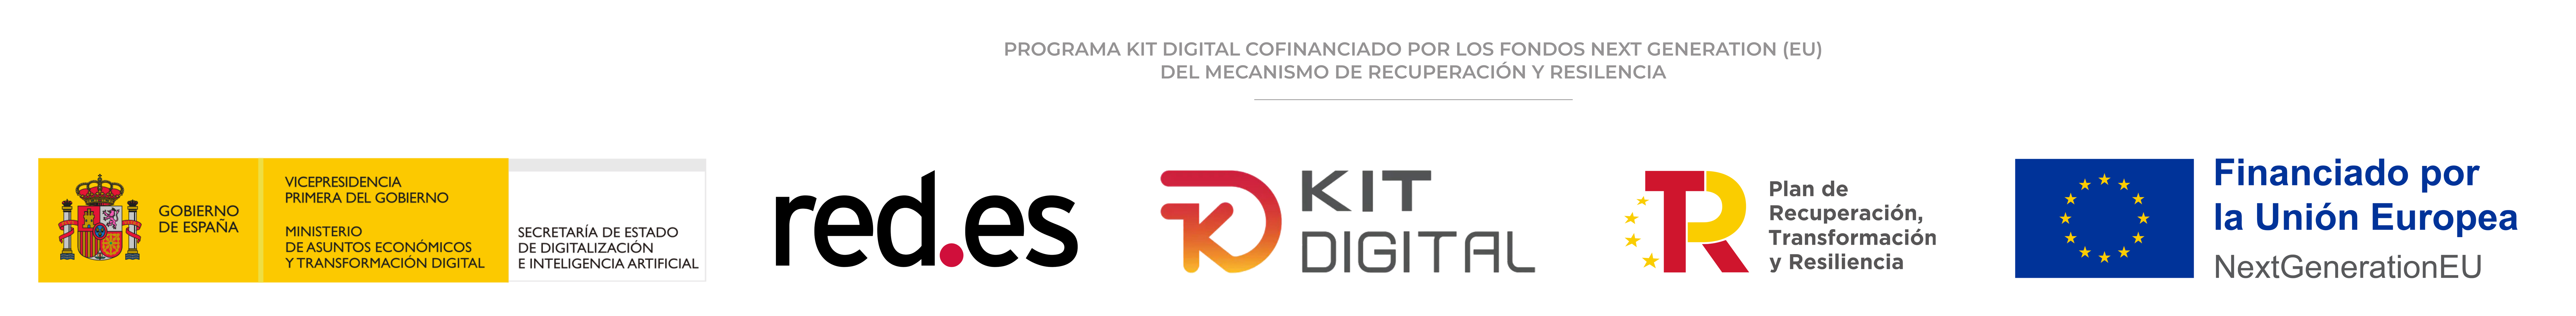 Logo Kit Digital 